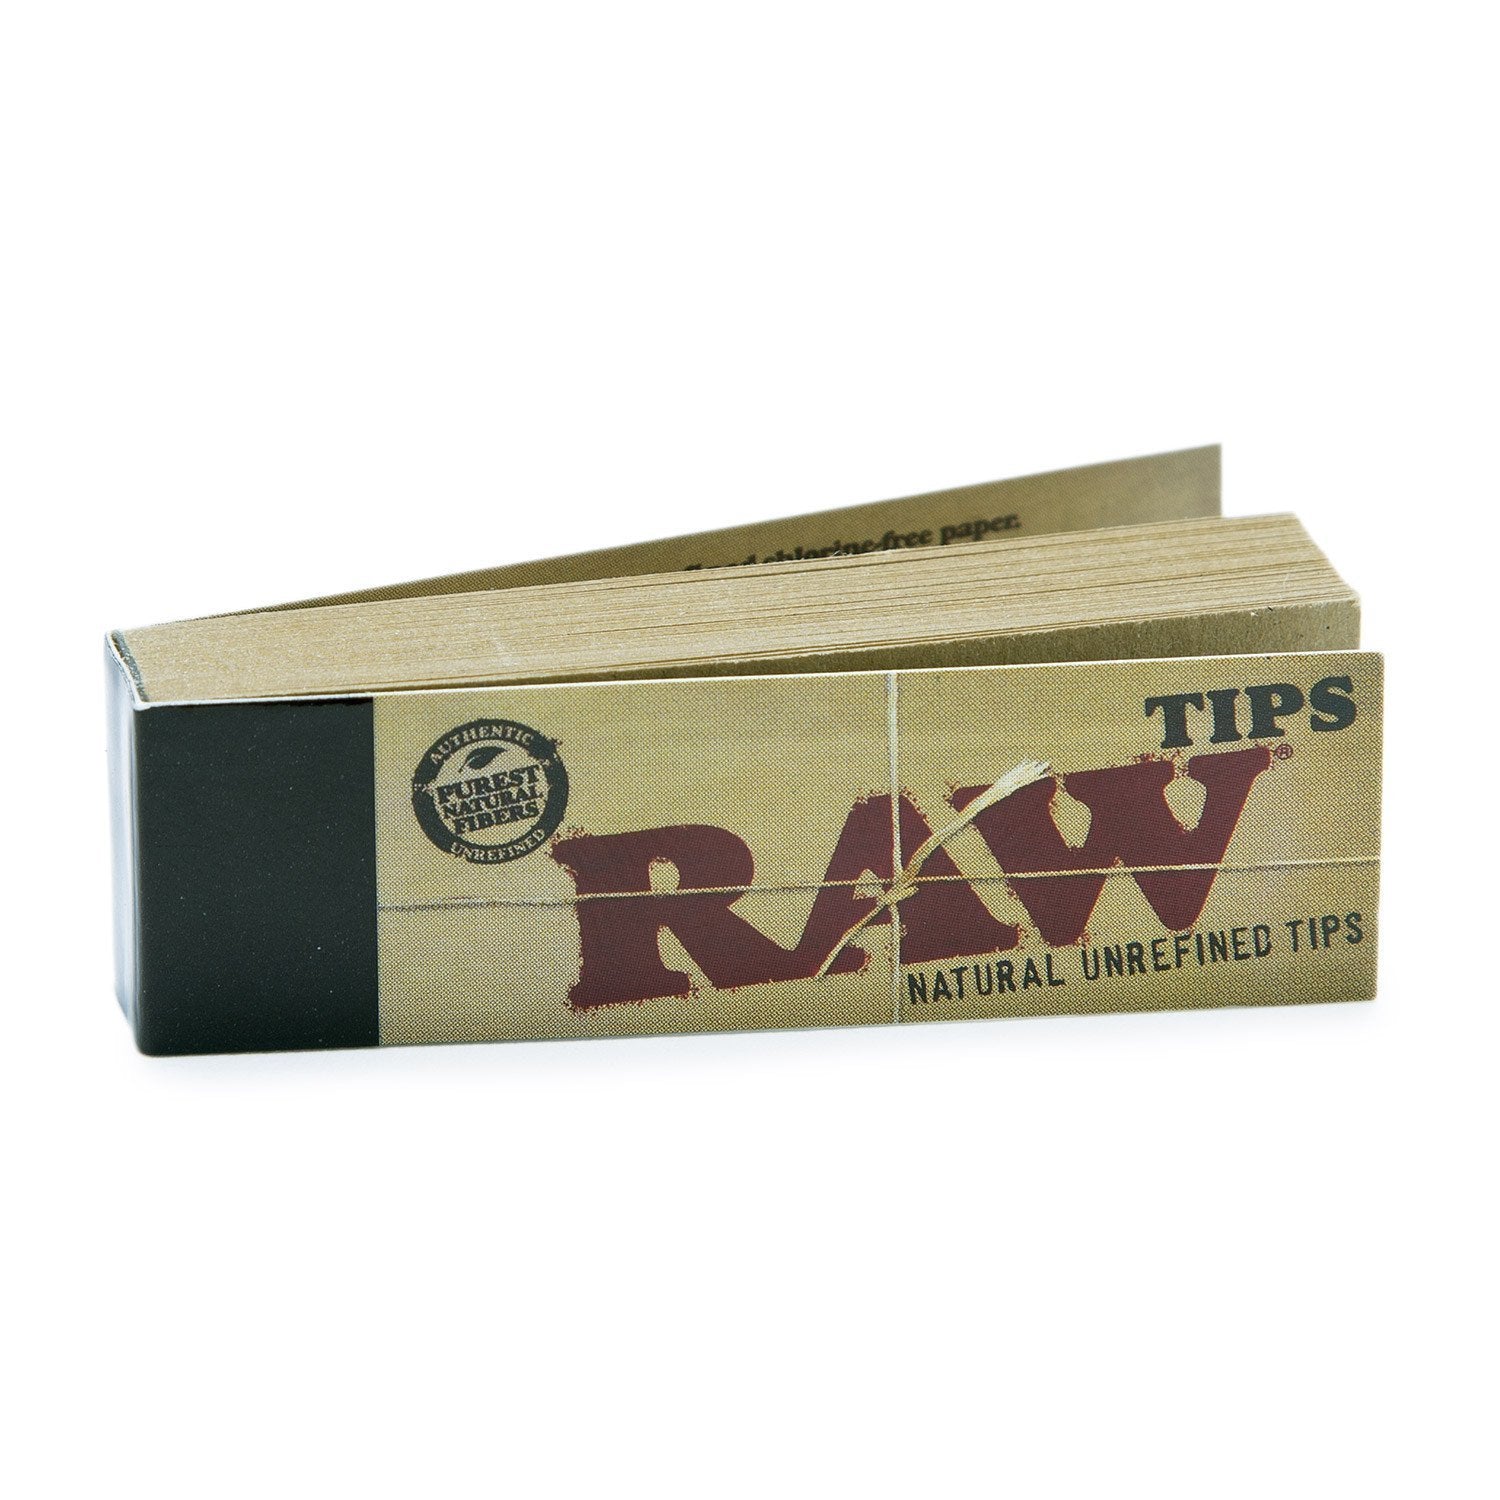 RAW ORIGINAL TIPS - 50 PACKS